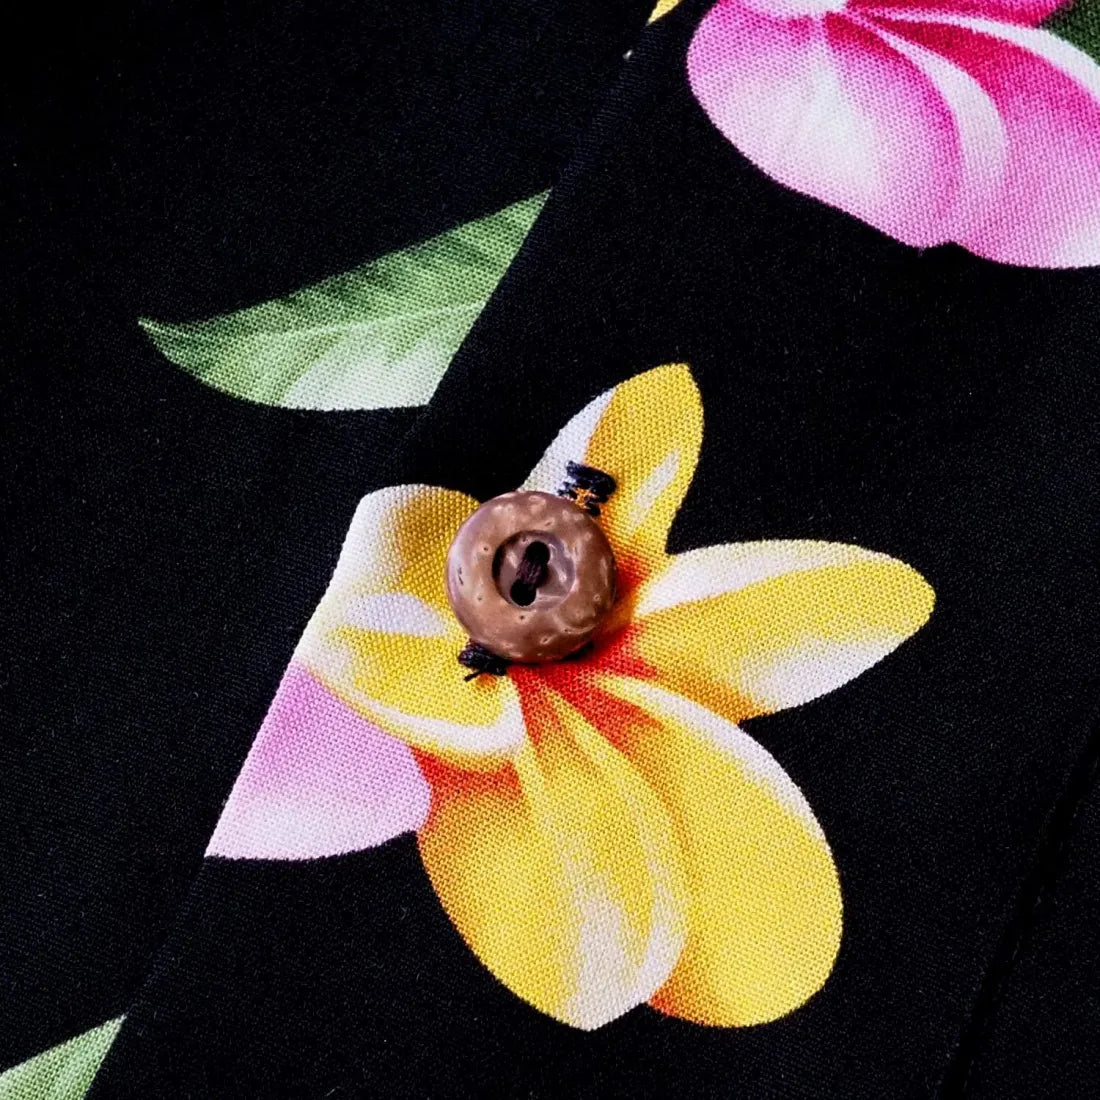 Pebble Black Hawaiian Rayon Shirt - Made In Hawaii